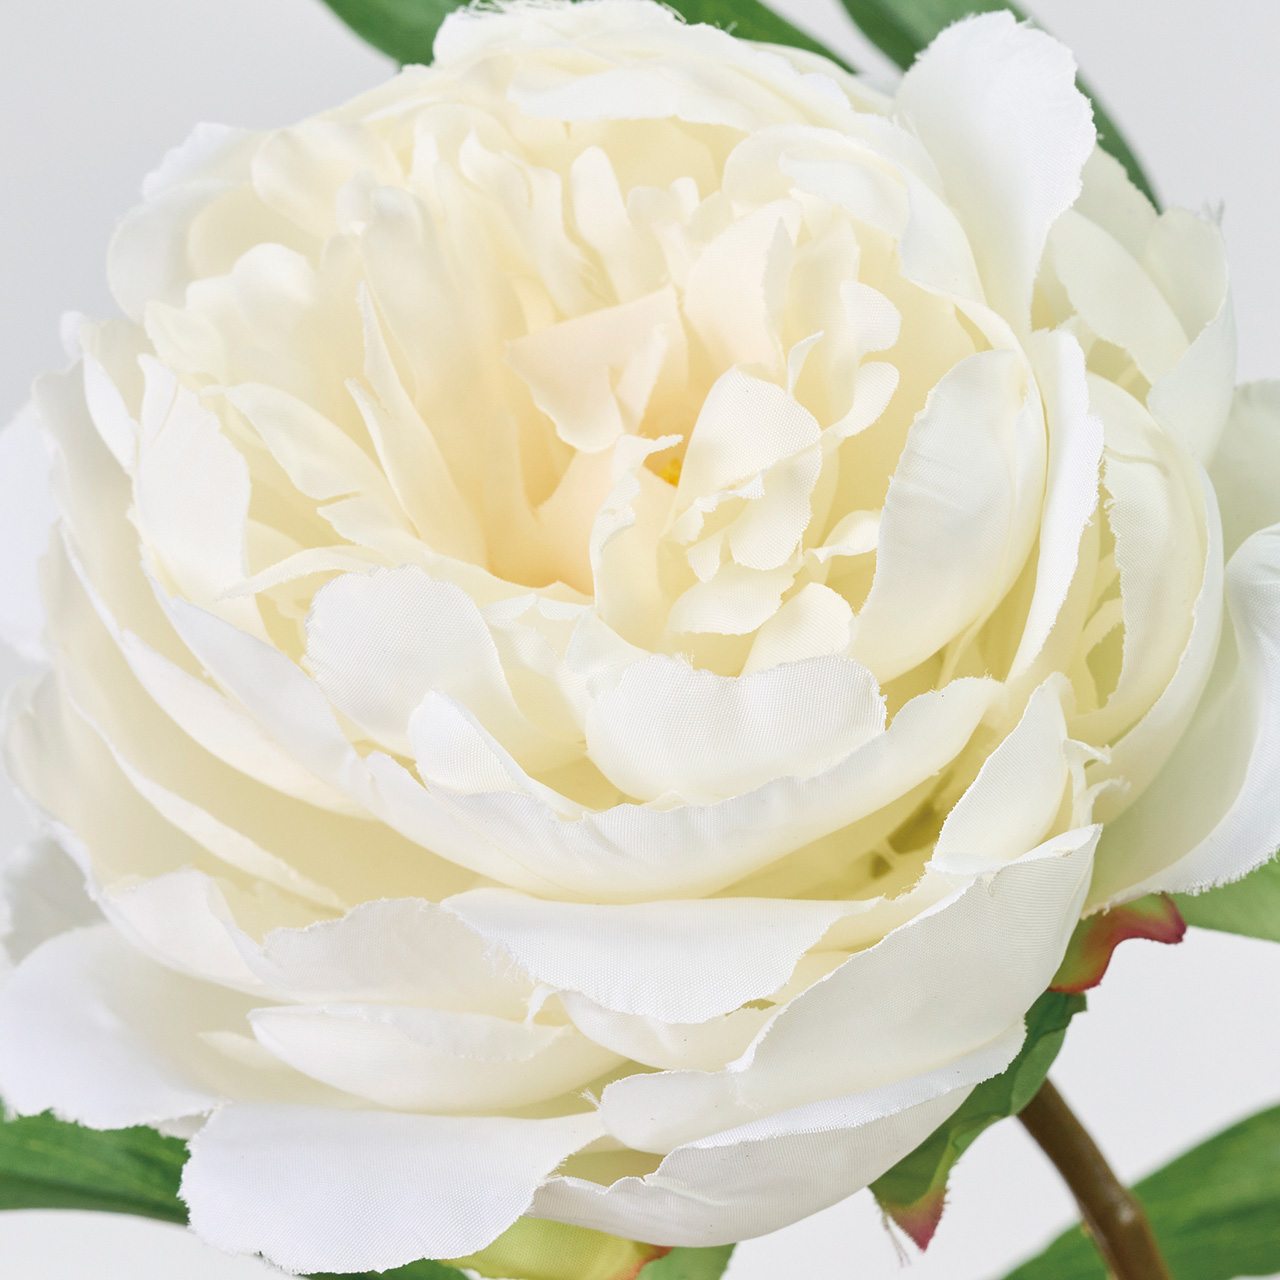 MAGIQ　アントワープピオニー　ホワイト　アーティフィシャルフラワー　造花　ピオニー　牡丹　FM003604-001